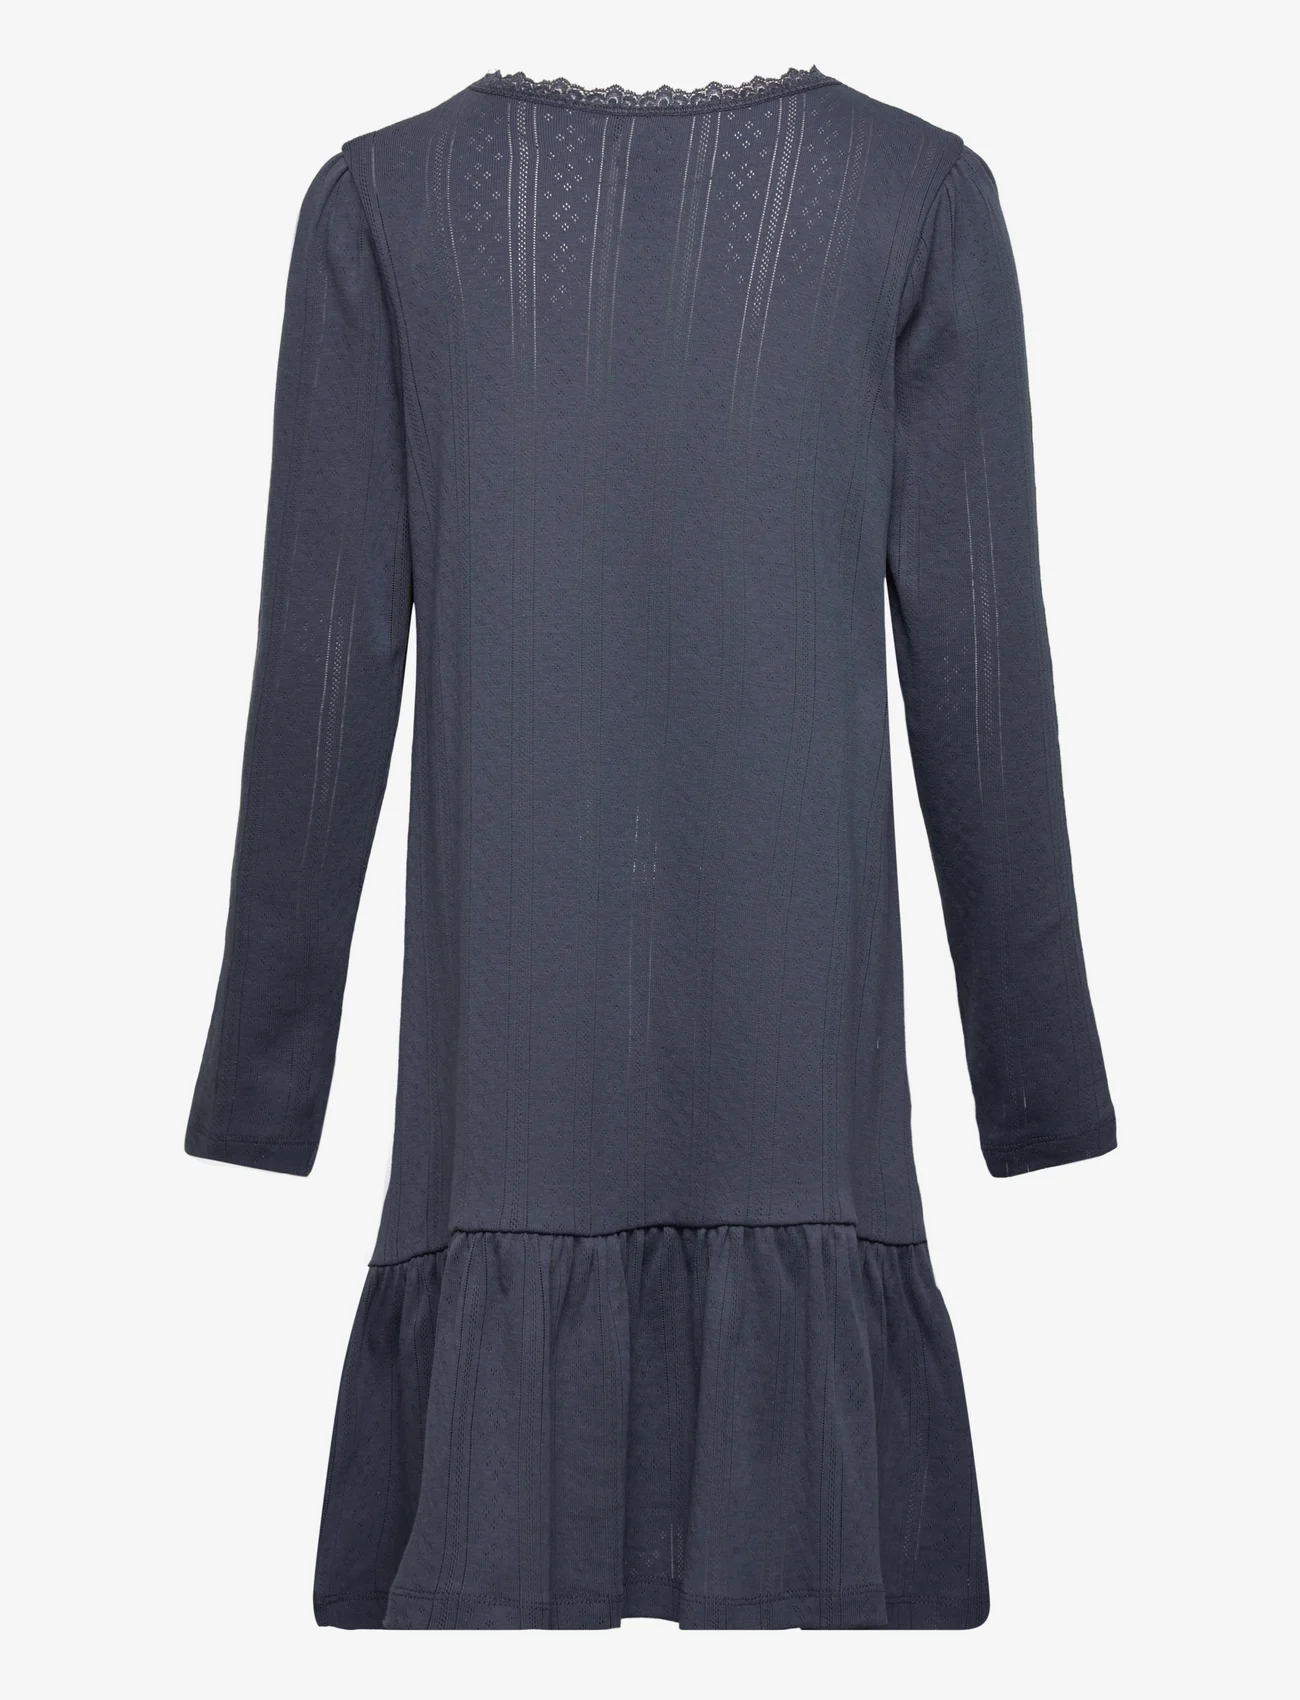 Noa Noa miniature - Dress long sleeve - long-sleeved casual dresses - mood indigo - 1